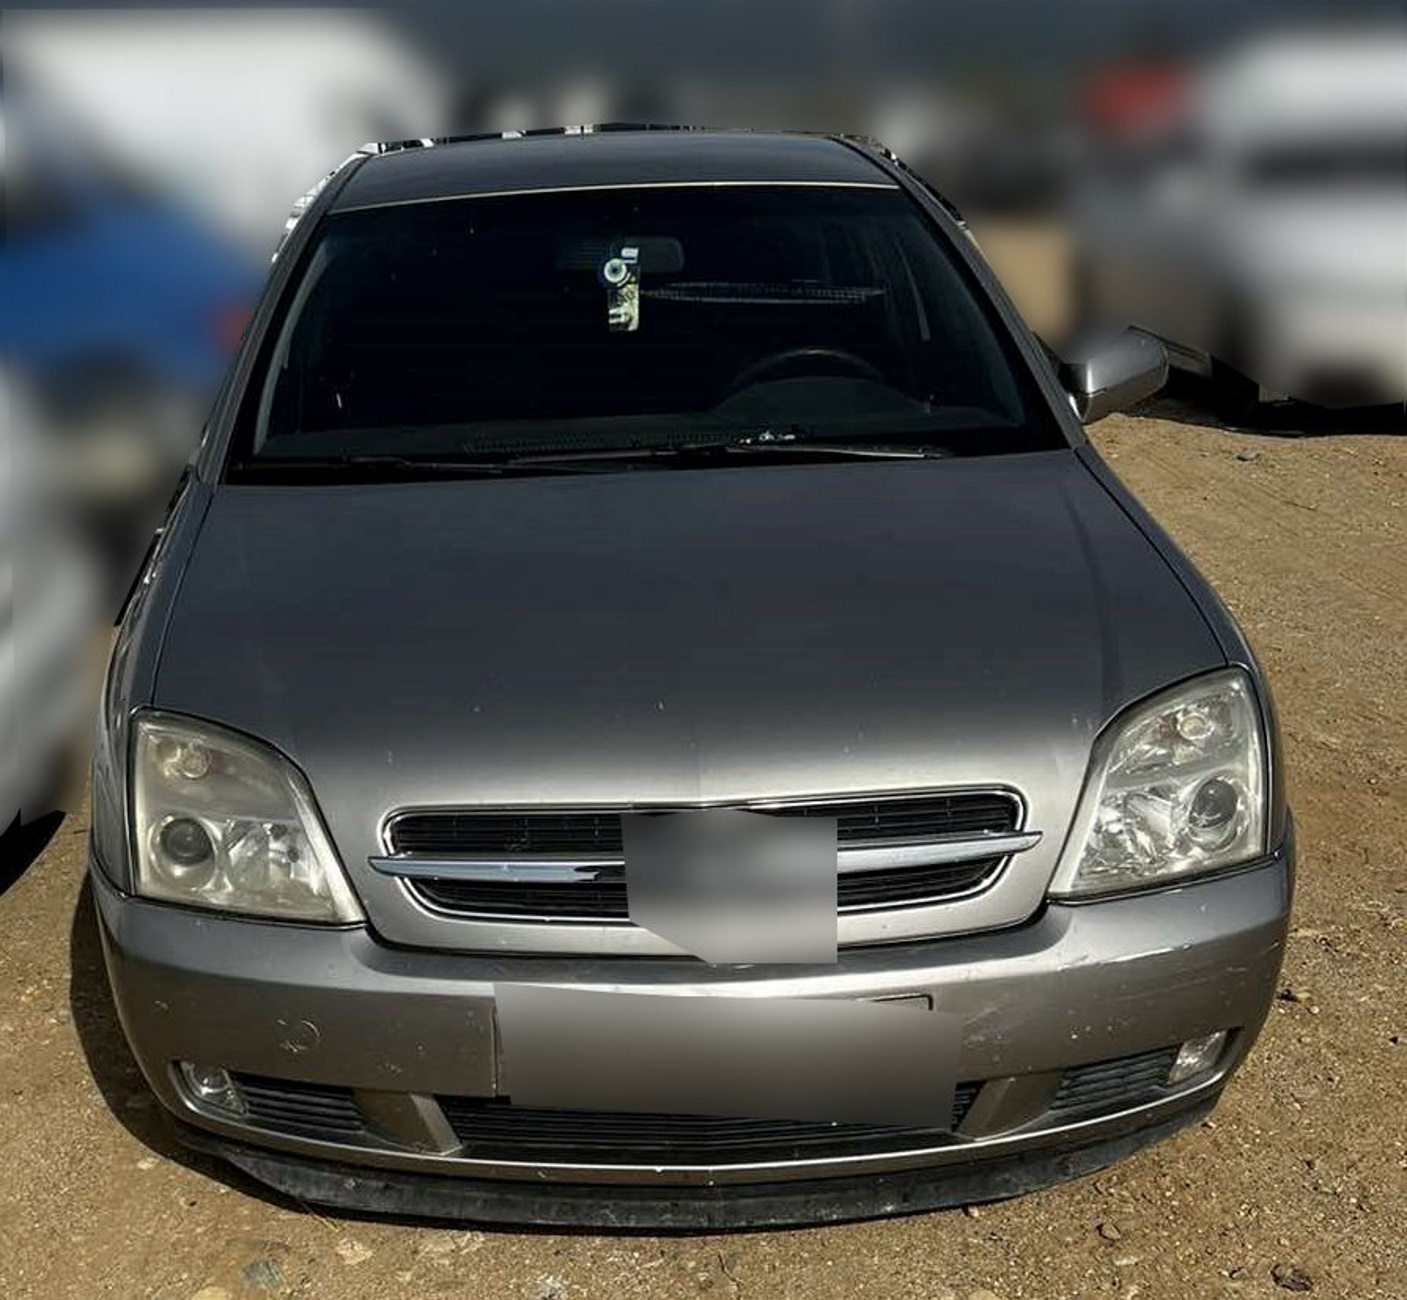 Εγνατία Οδός: Το αυτοκίνητο που του έκλεψαν έγινε είδηση στο αστυνομικό δελτίο – Καταδίωξη και συλλήψεις